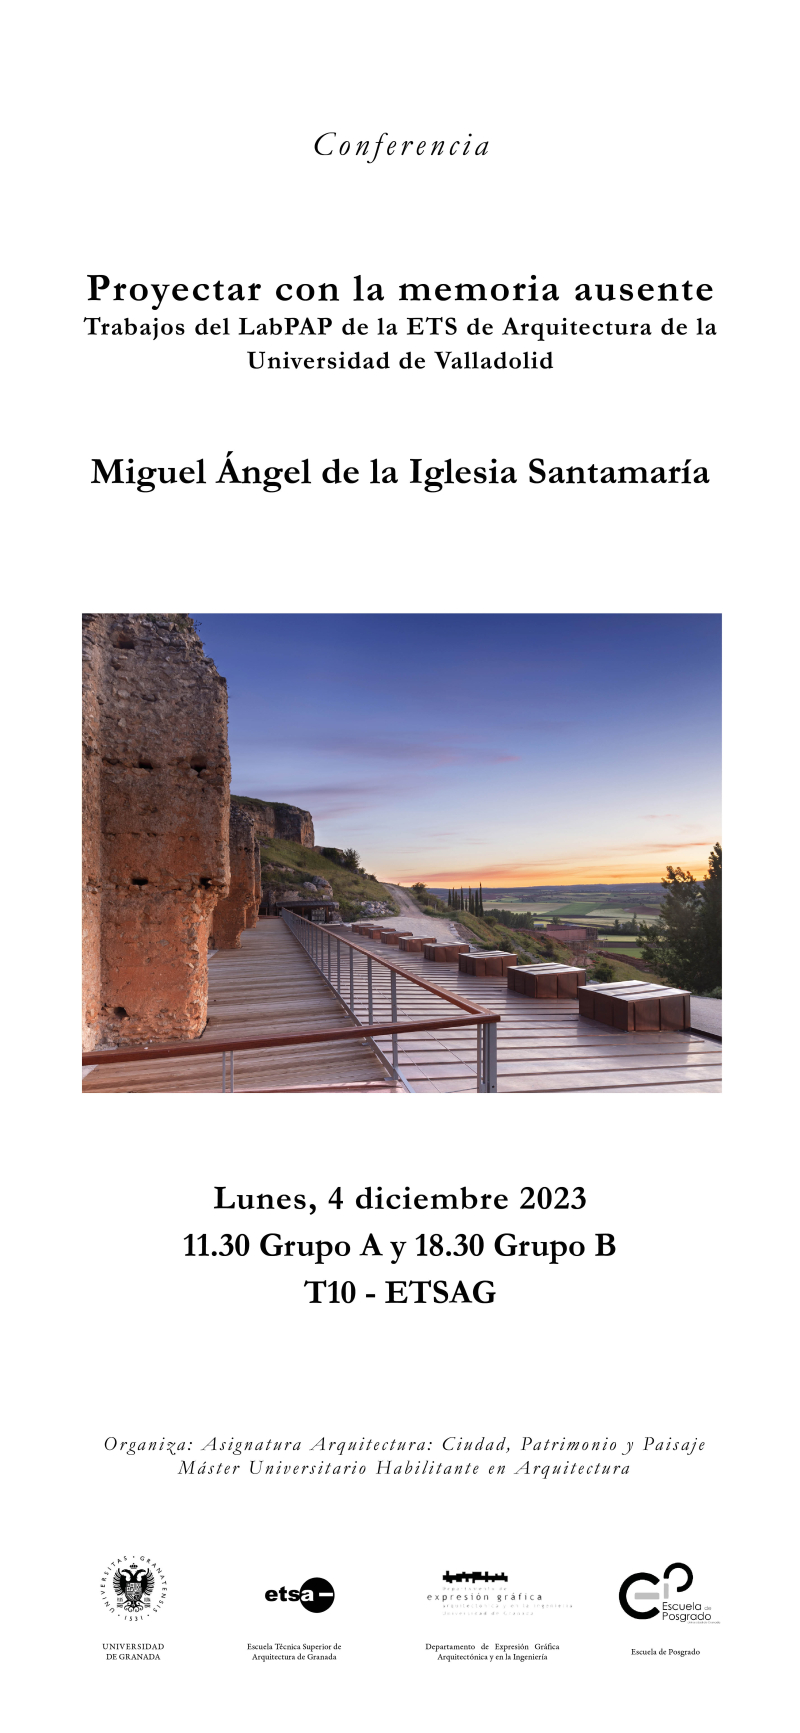 Cartel de la conferencia de Miguel Ángel de la Iglesia Santamaría